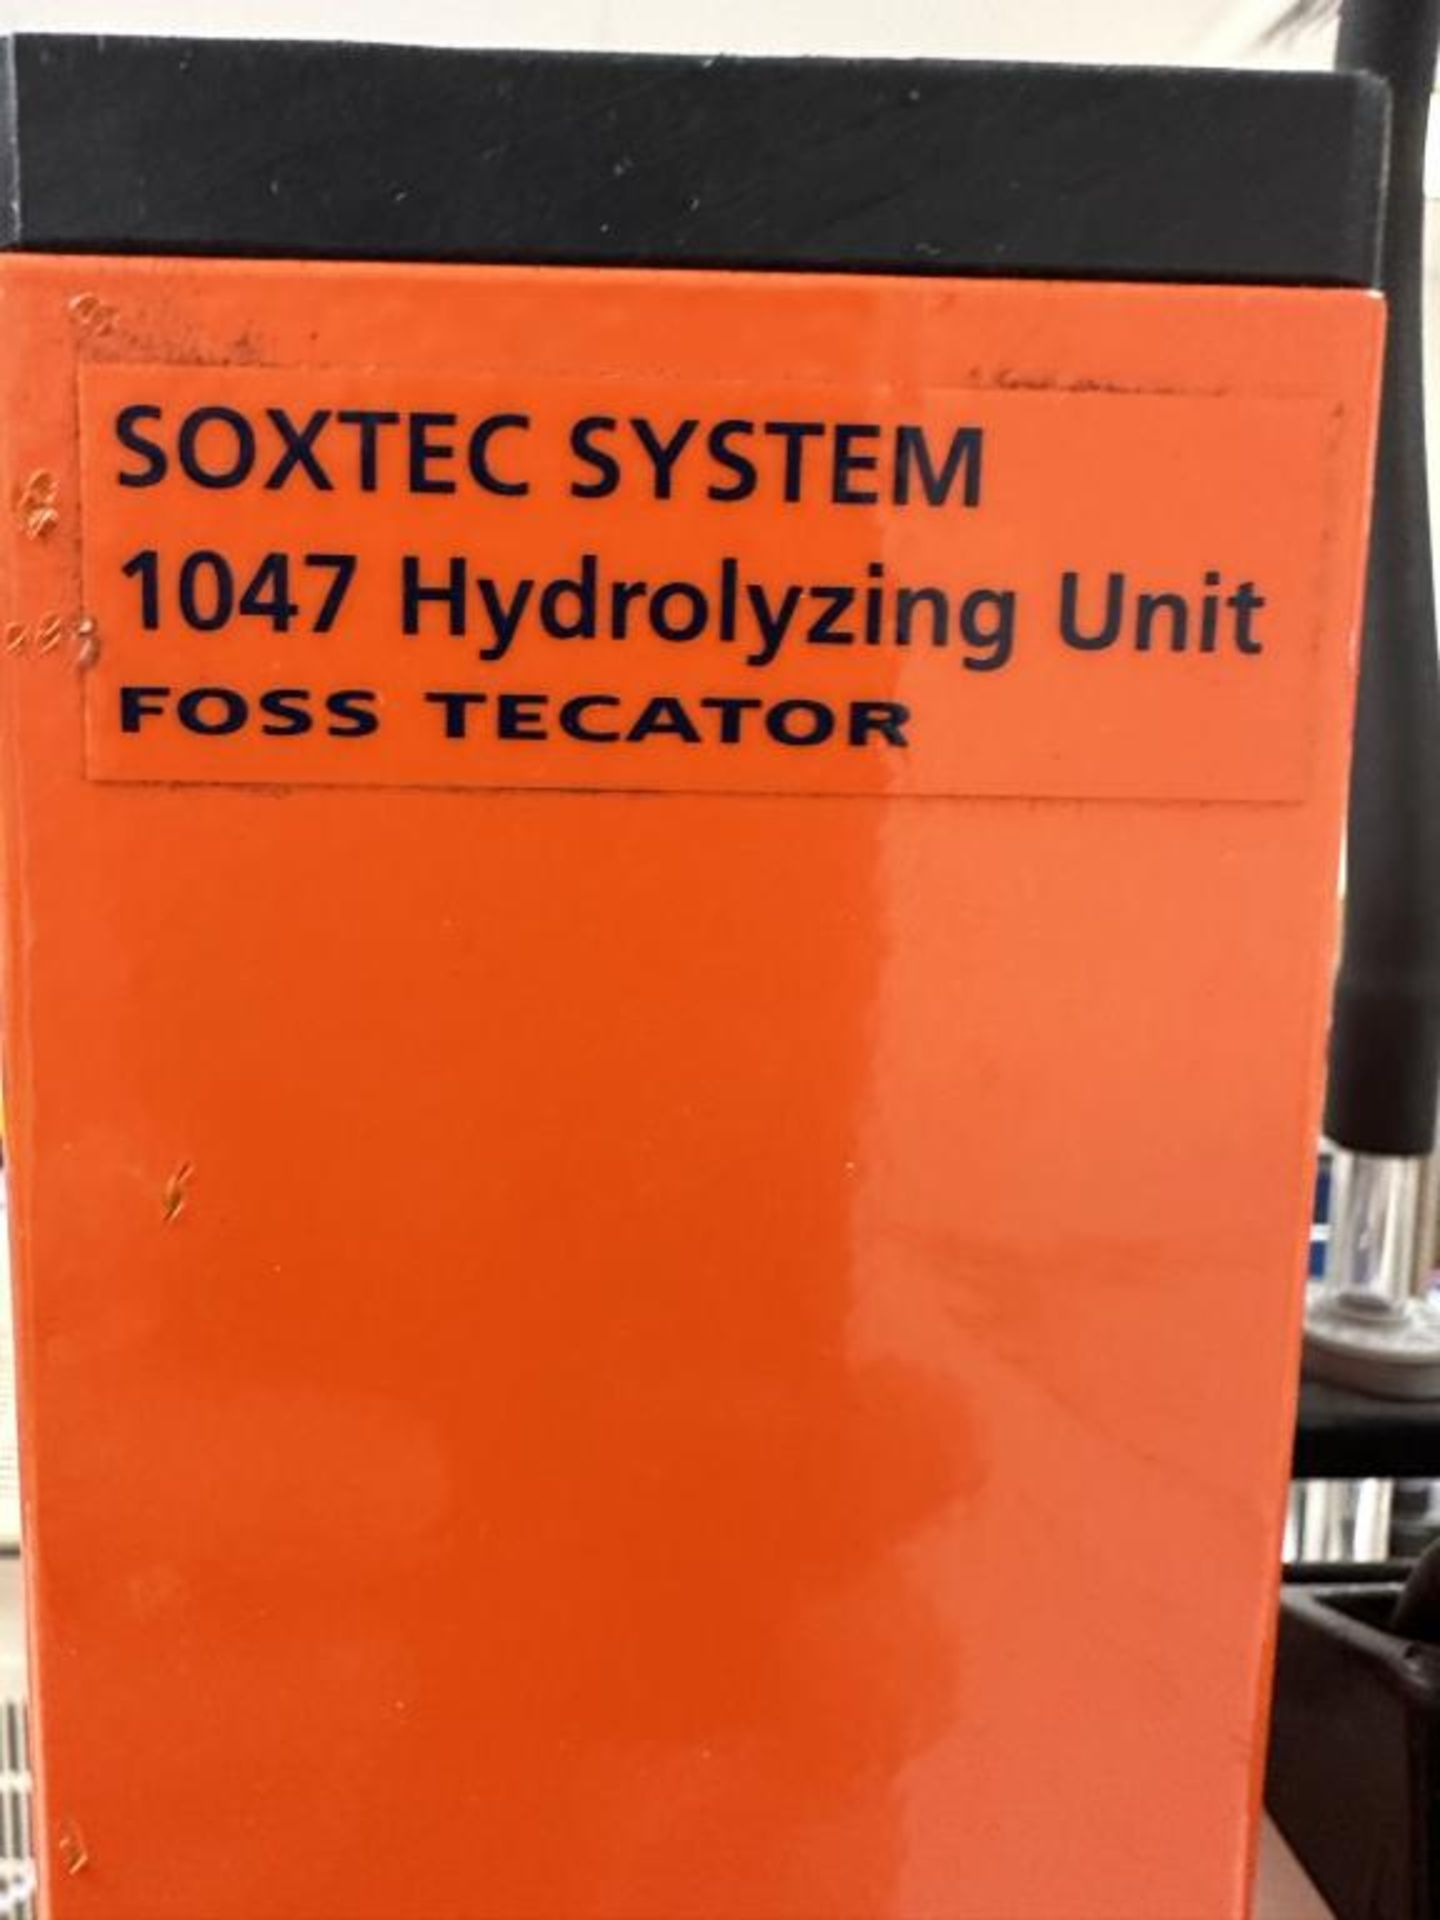 Foss Tecator 1047 Hydrolyzing Unit - Image 6 of 7